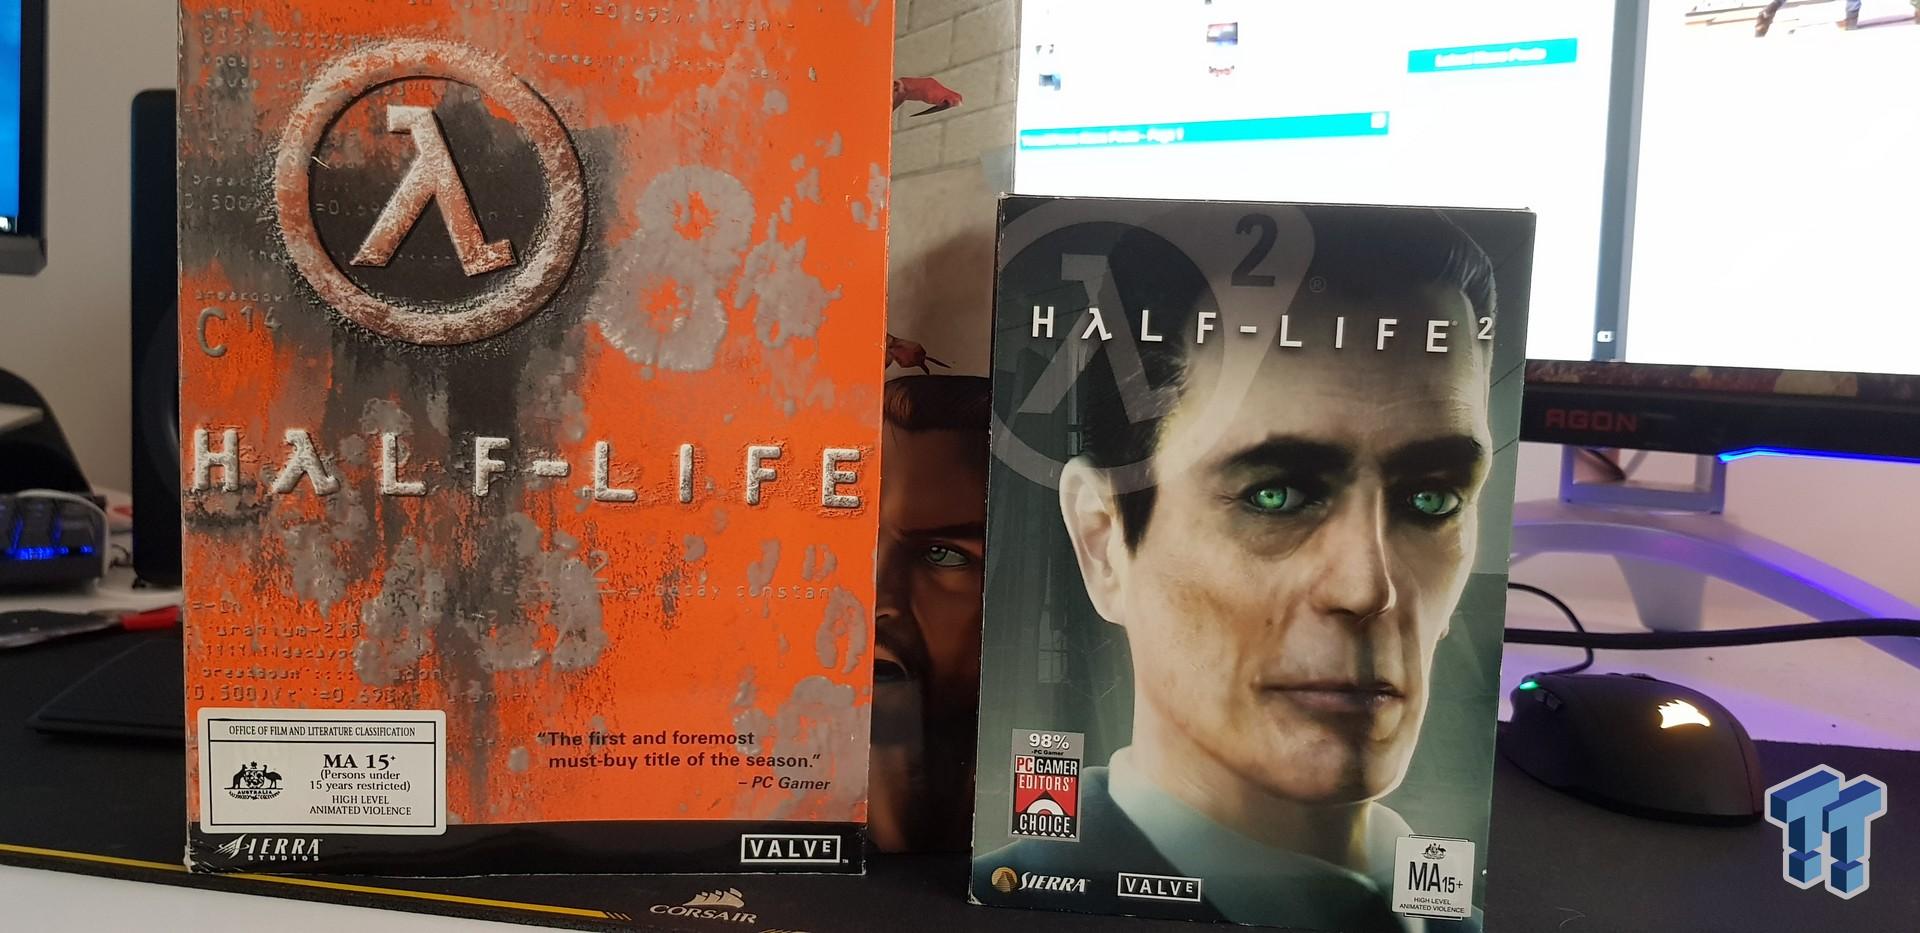 Half-Life 2 - Big Box Alyx Edition PC